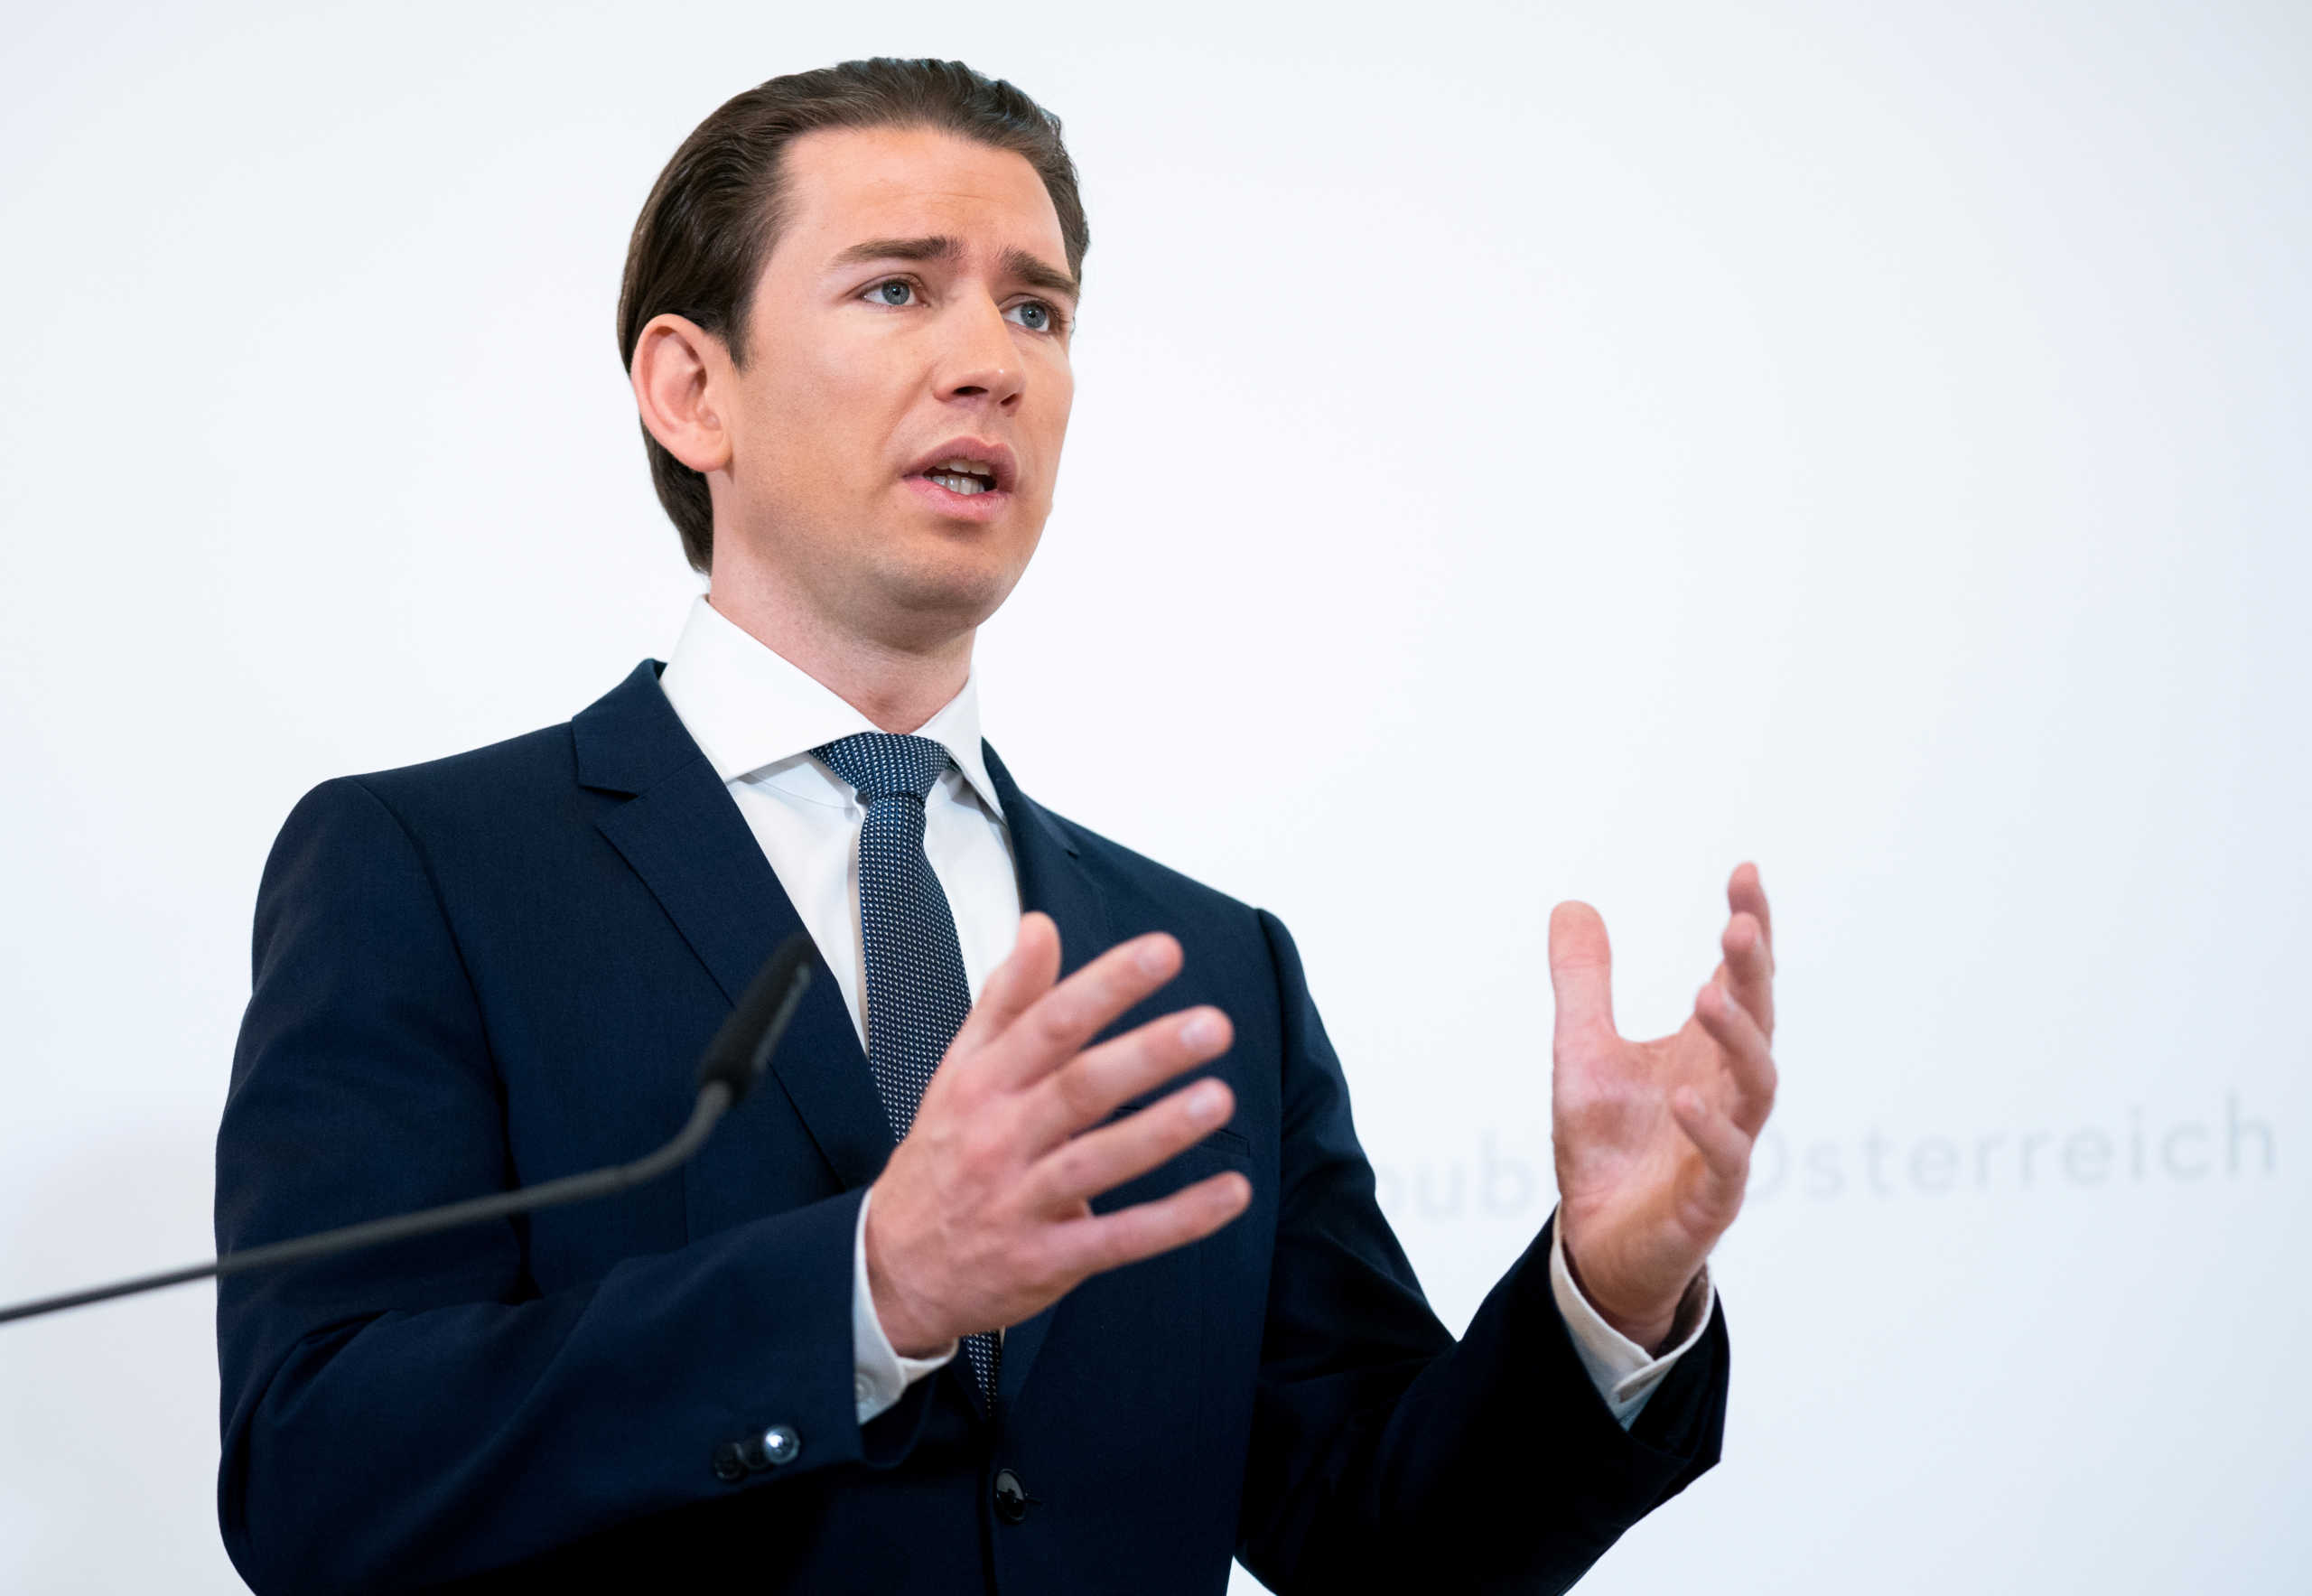 Αυστρία: Υποχωρεί η δημοτικότητα του Σεμπάστιαν Κουρτς – Πτώση και για το Λαϊκό Κόμμα